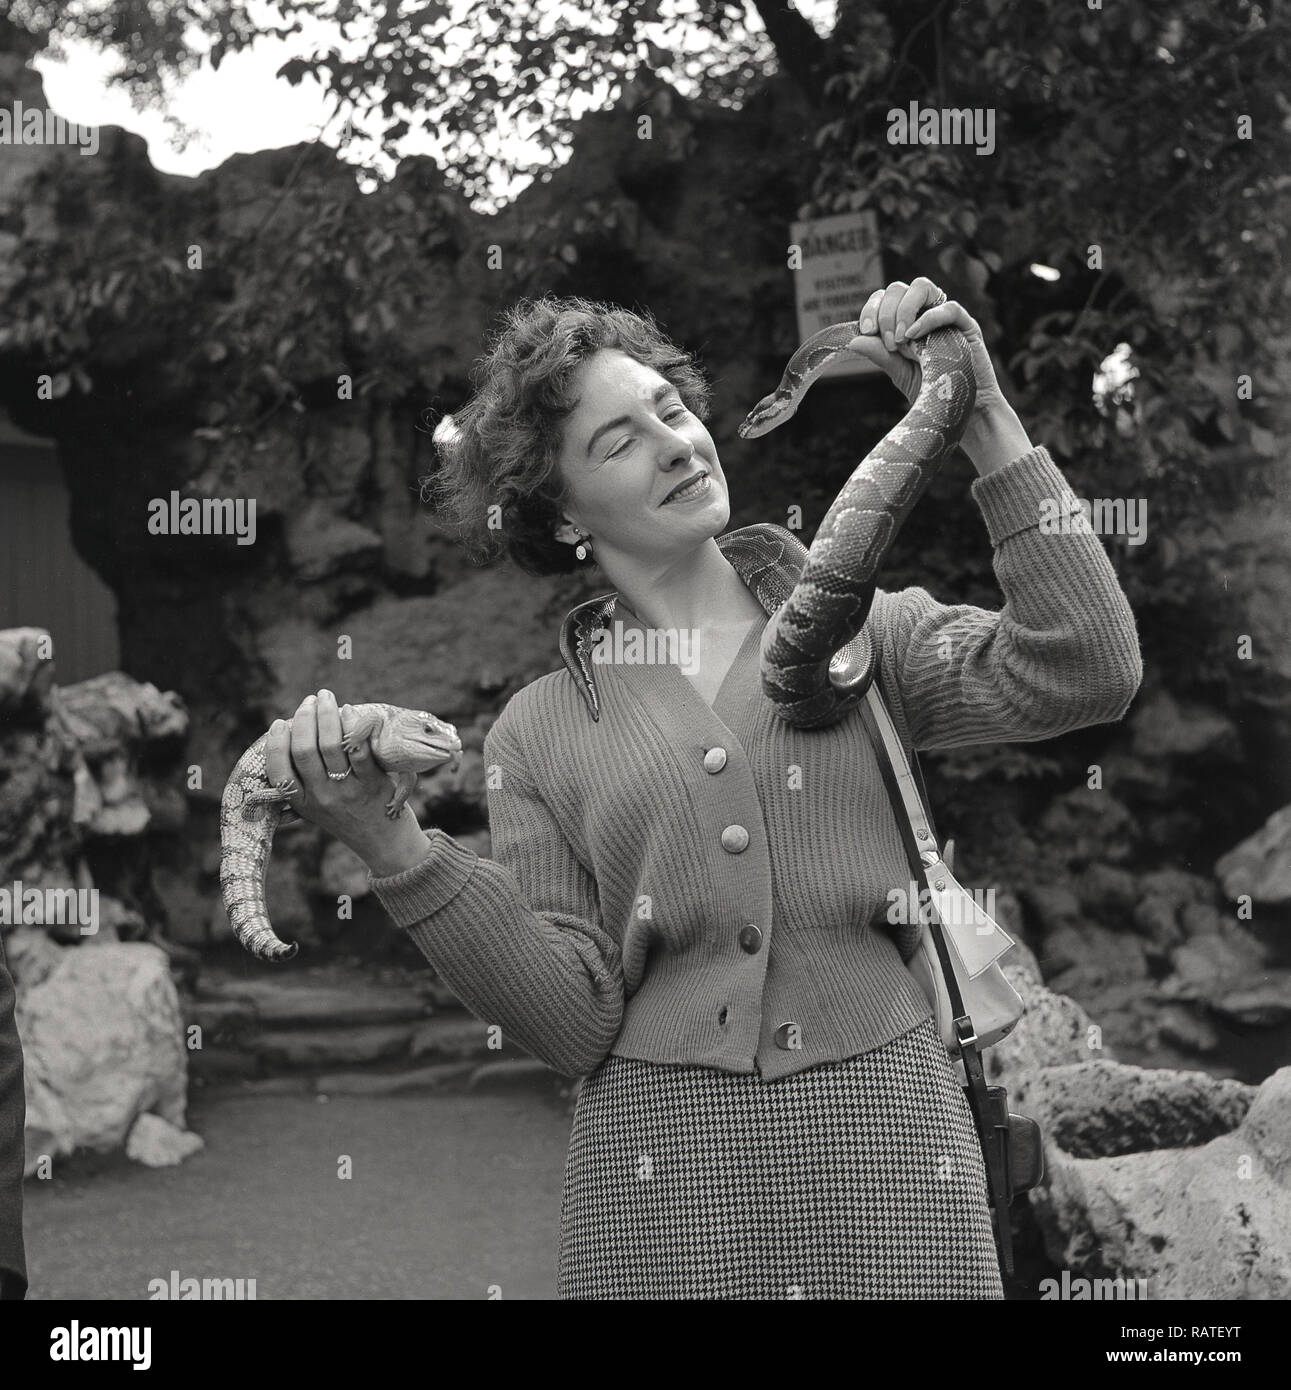 1950er Jahre, elegante Dame stehen draußen in einem Zoo, halten eine Schlange in der Nähe von ihrem Gesicht und auch einen kleinen Reptil in ihrer Hand, ein hatchling", ein Baby Krokodil, England, UK. Stockfoto